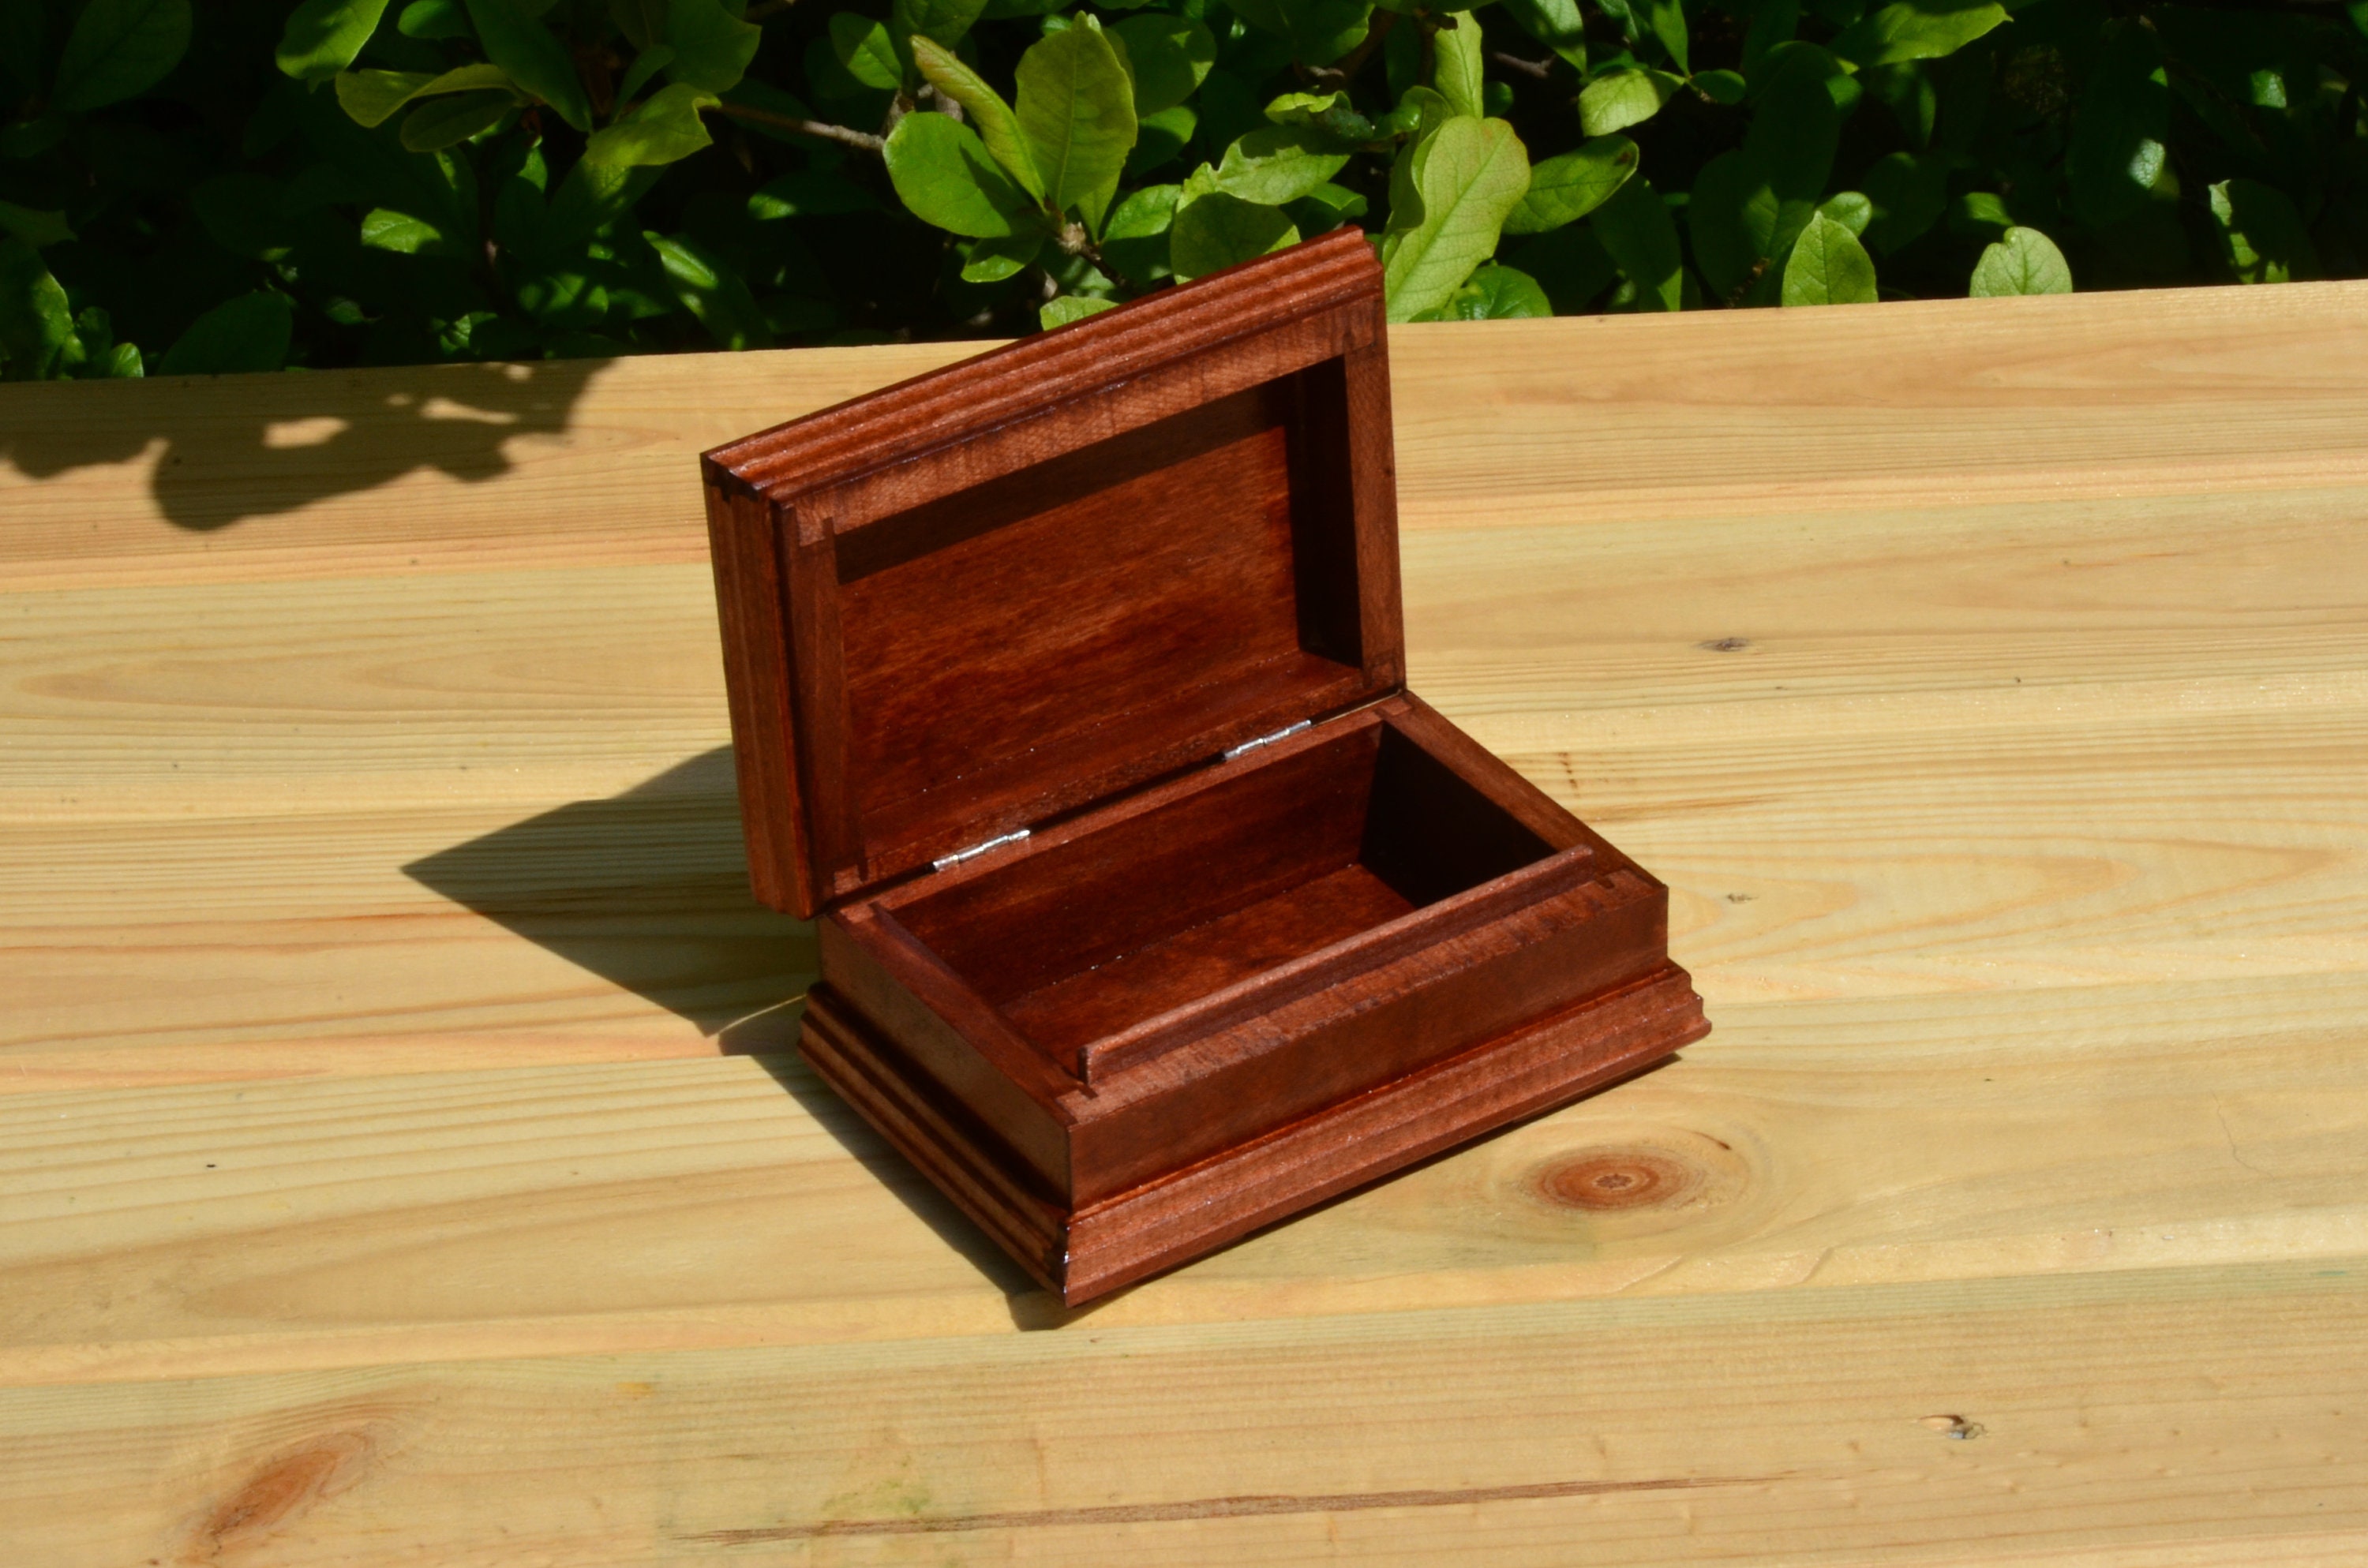 Small box. Mahogany color keys Wooden box for jewelry